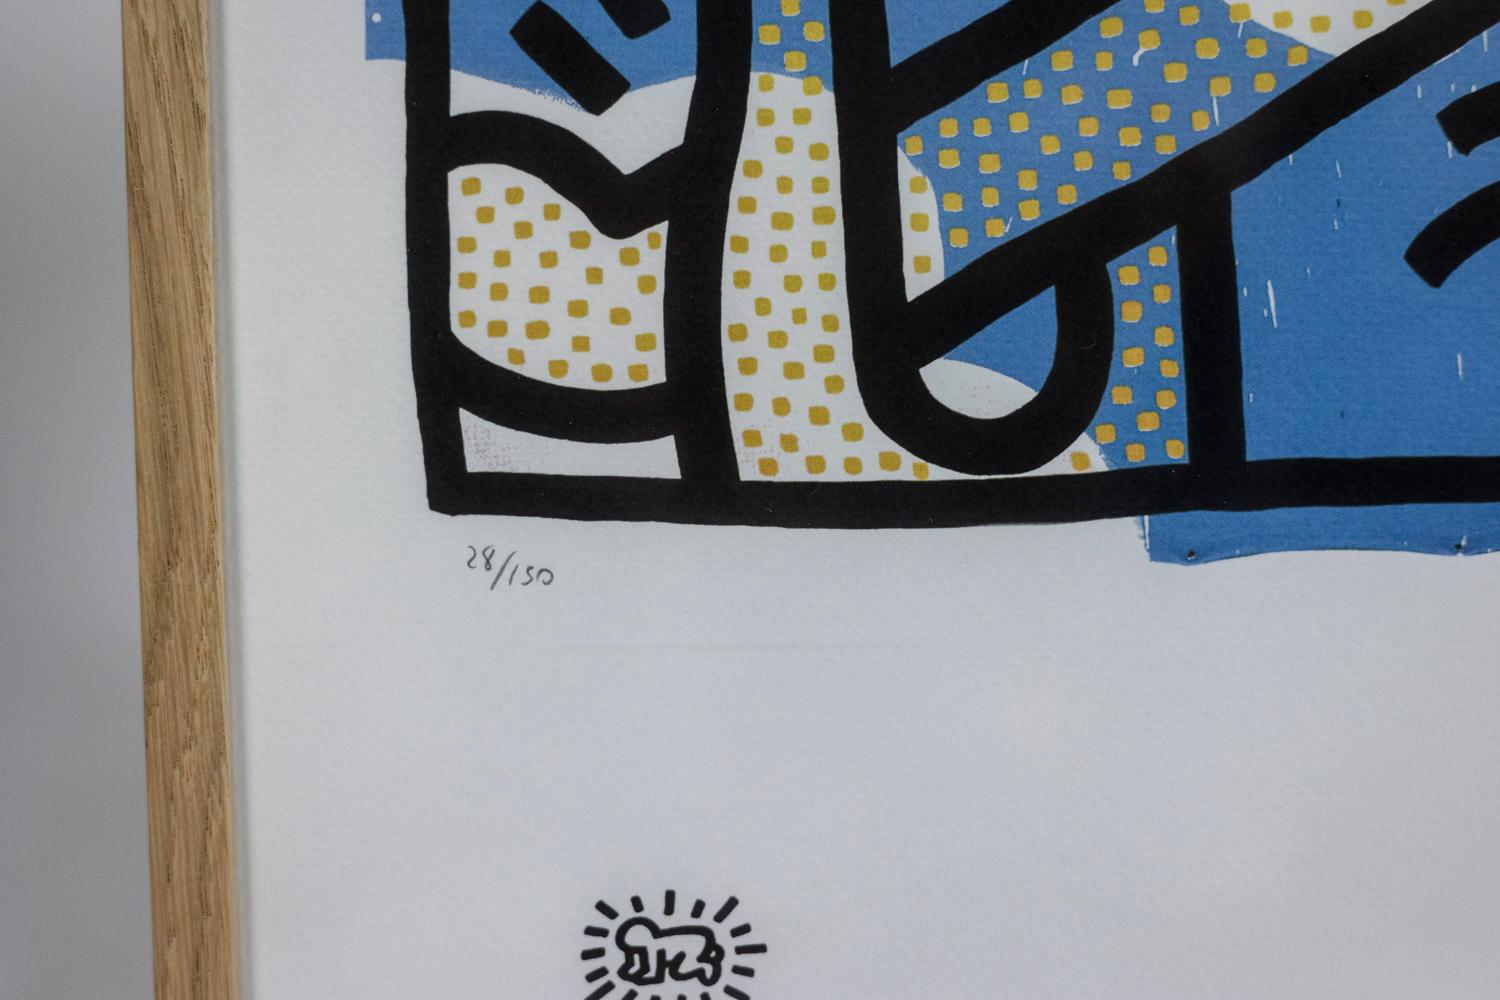 Keith Haring, signiert und nummeriert.

Abstrakter Siebdruck mit schematischen Figuren in Blau-, Weiß-, Gelb- und Schwarztönen in einem blonden Eichenrahmen.

Nummeriert 28/150.

Amerikanische Arbeiten aus den 1990er Jahren.

Abmessungen: B 50 x H